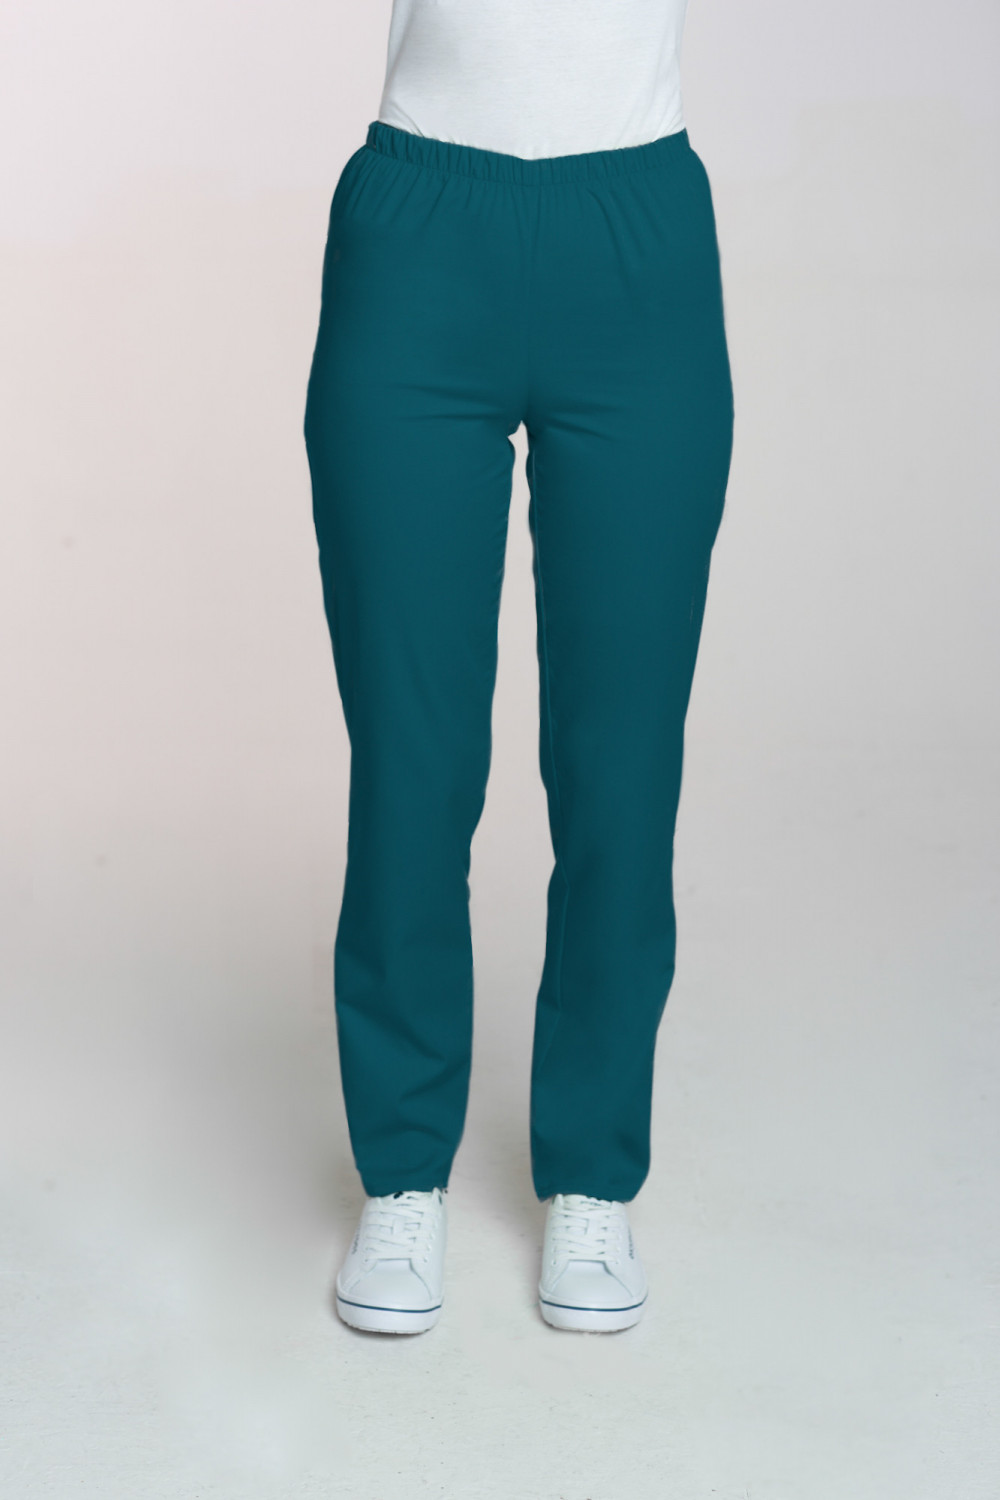 M-086 Spodnie damskie medyczne spodnie do pracy kolor ciemny zielony